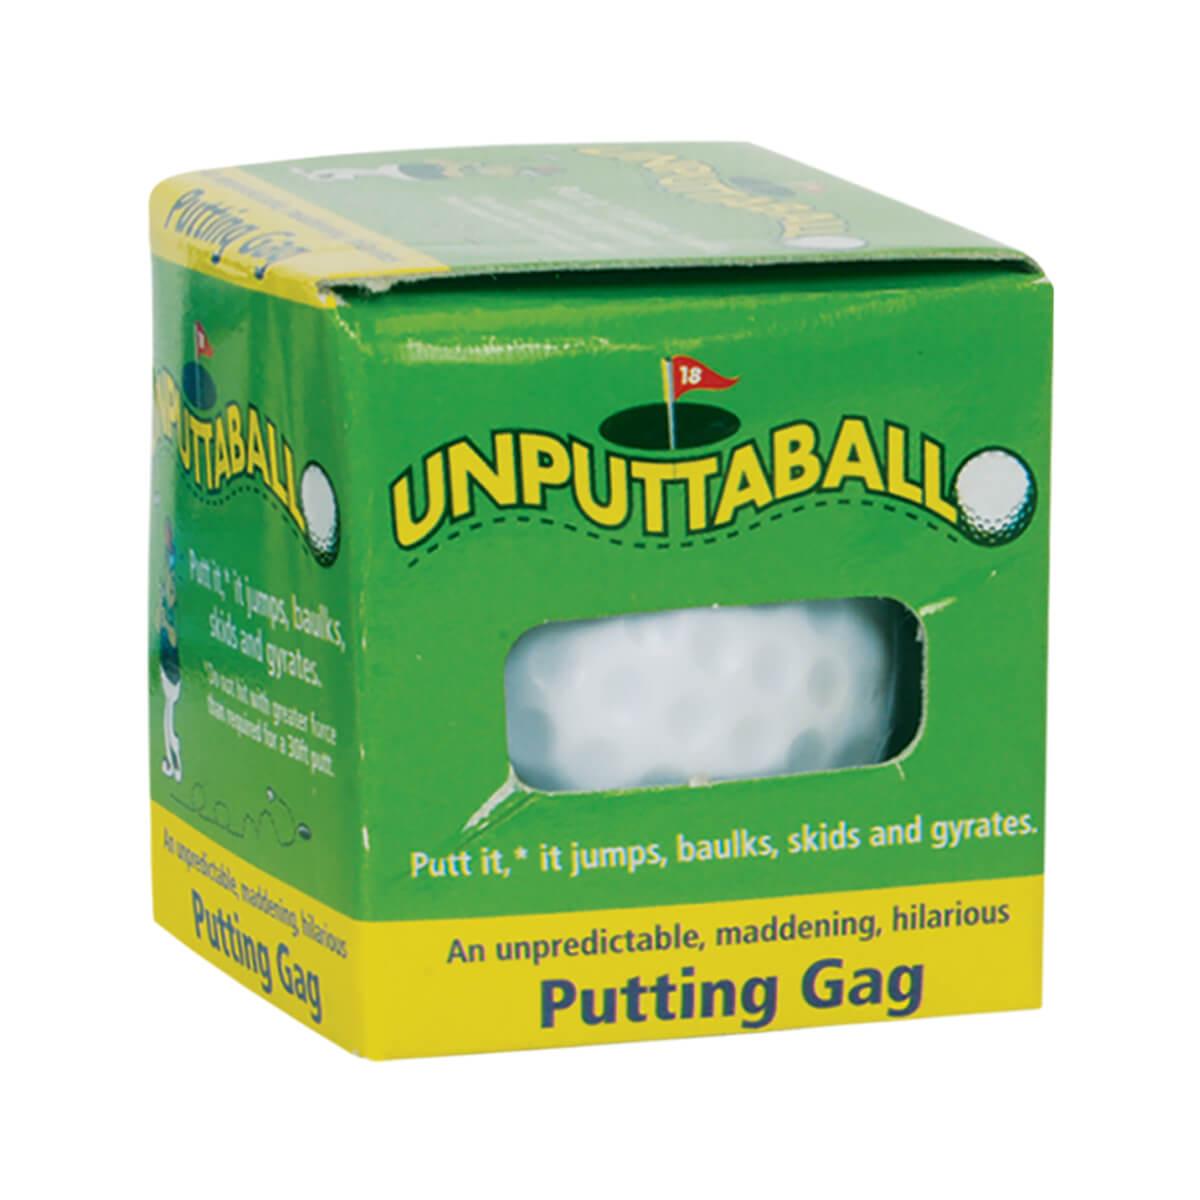  Unputtaball Golf Ball Trick Toy